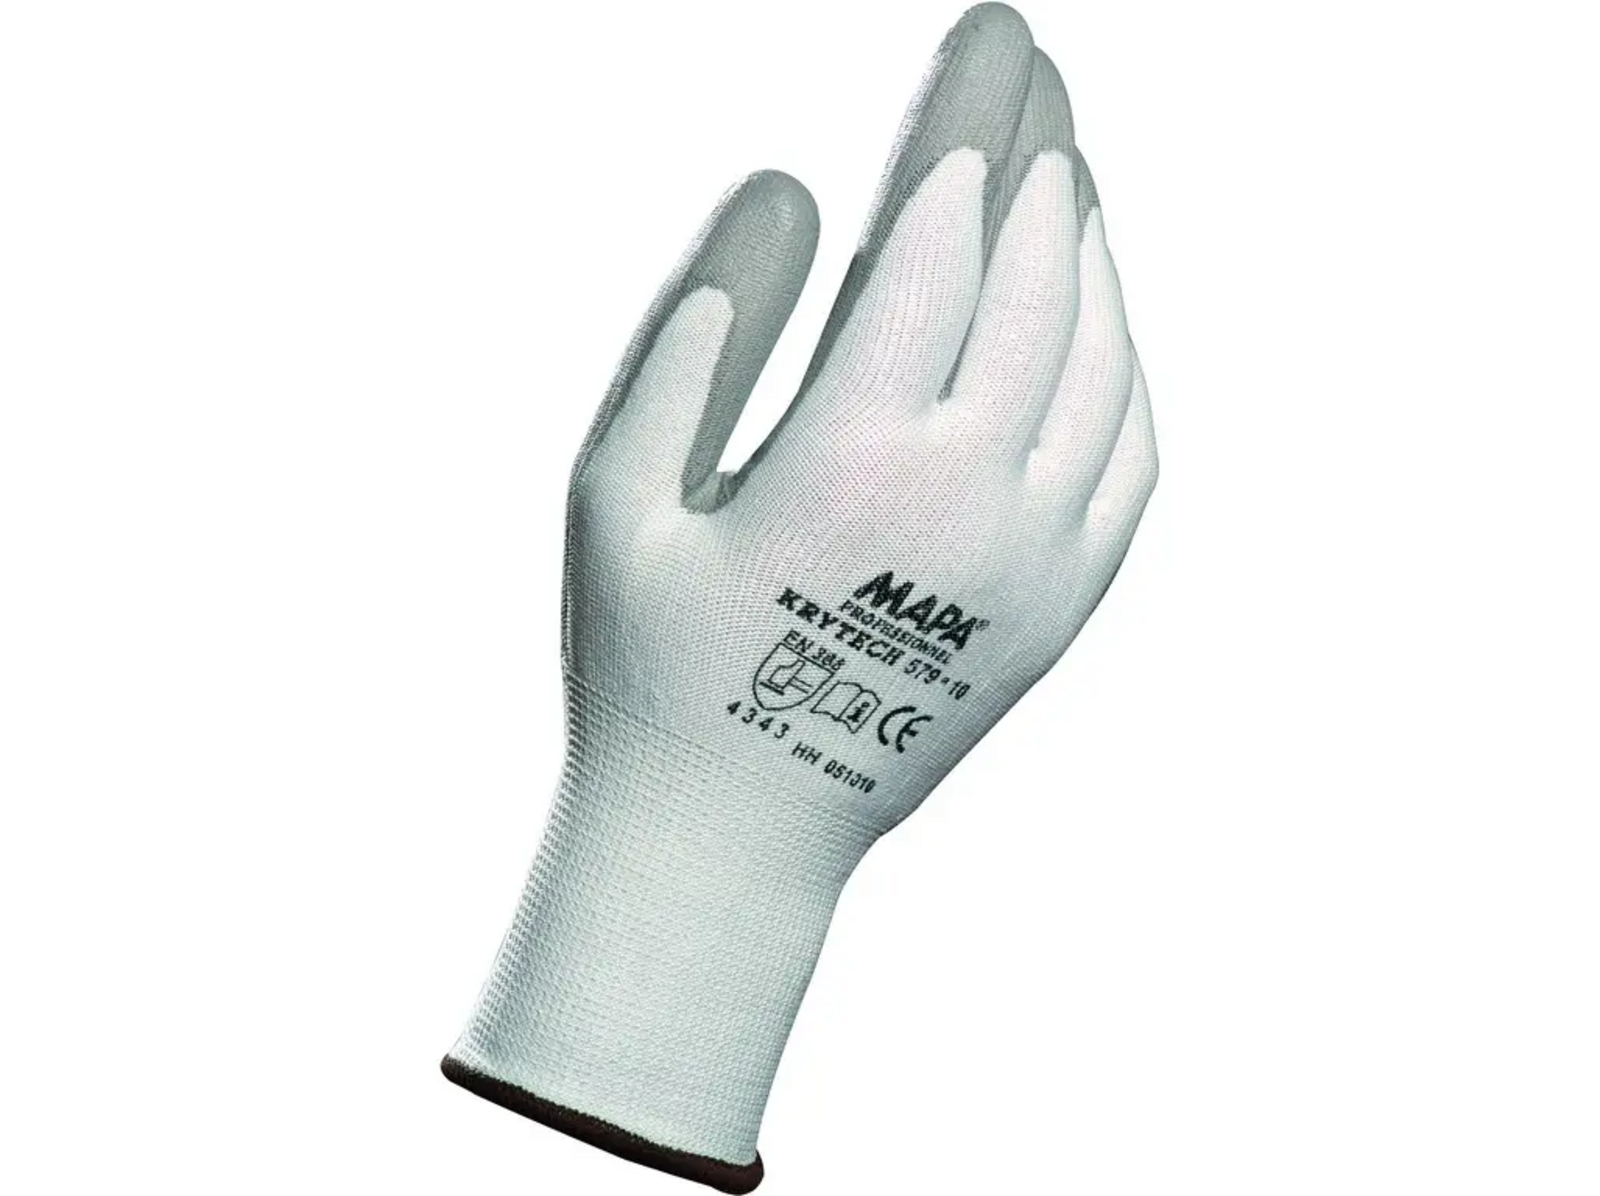 Protiporezové rukavice Mapa Krytech 579 - veľkosť: 8/M, farba: biela/sivá